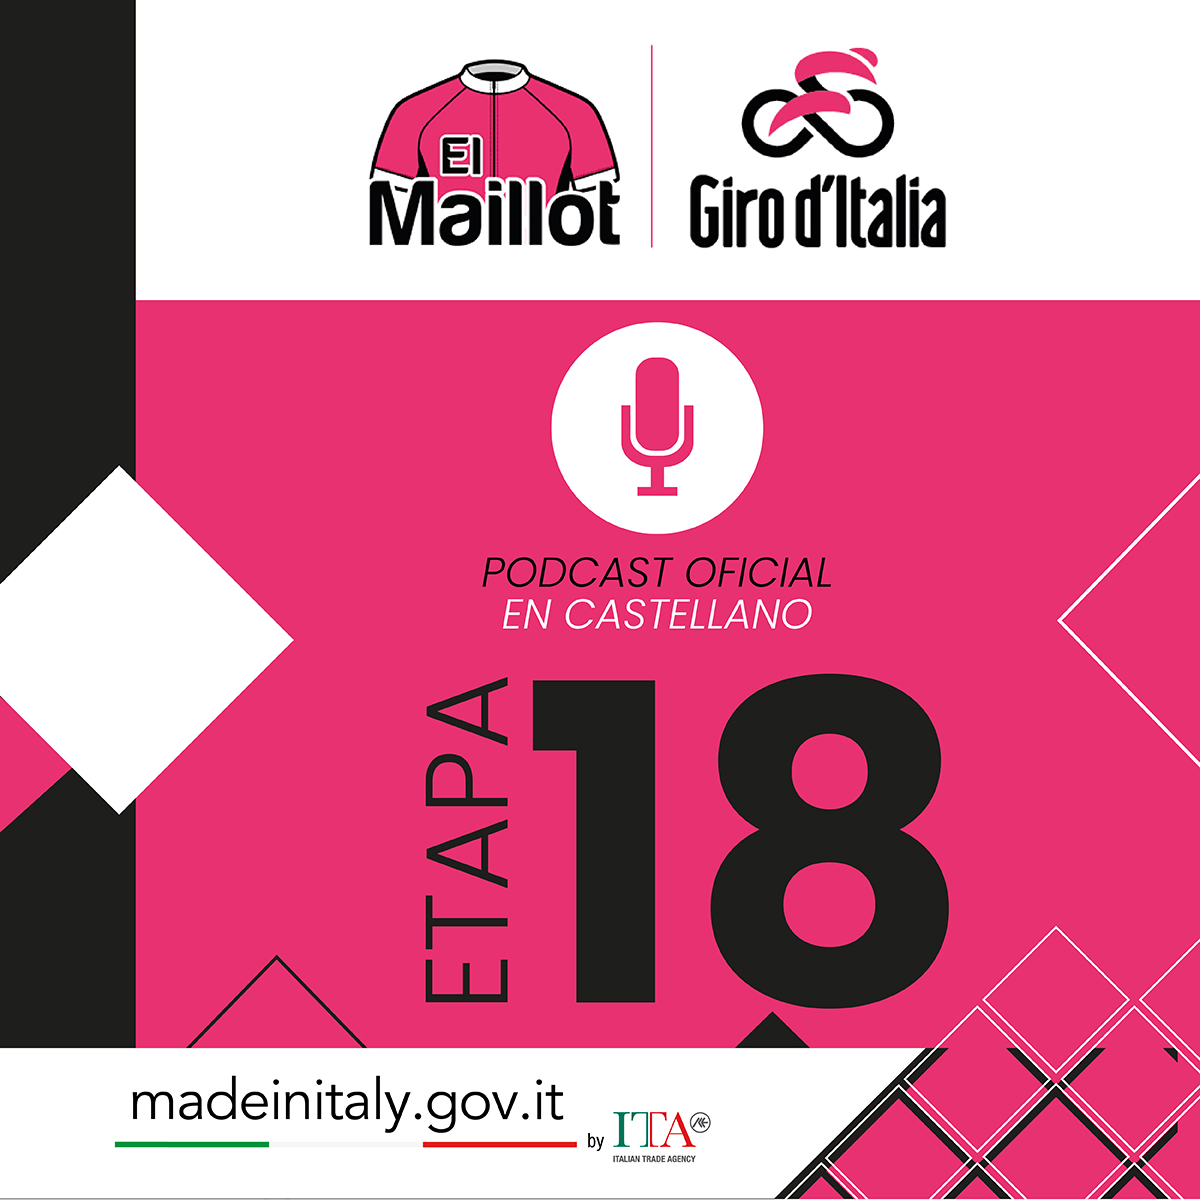 🚀 @MerlierTim es el más rápido en Padova 💗 @TamauPogi, a tres días de alcanzar la gloria 🚵 Mañana, etapa dura con final en Sappada ➡ go.ivoox.com/rf/129336907 🎙 Podcast oficial: @ElMaillot_ #GirodItalia